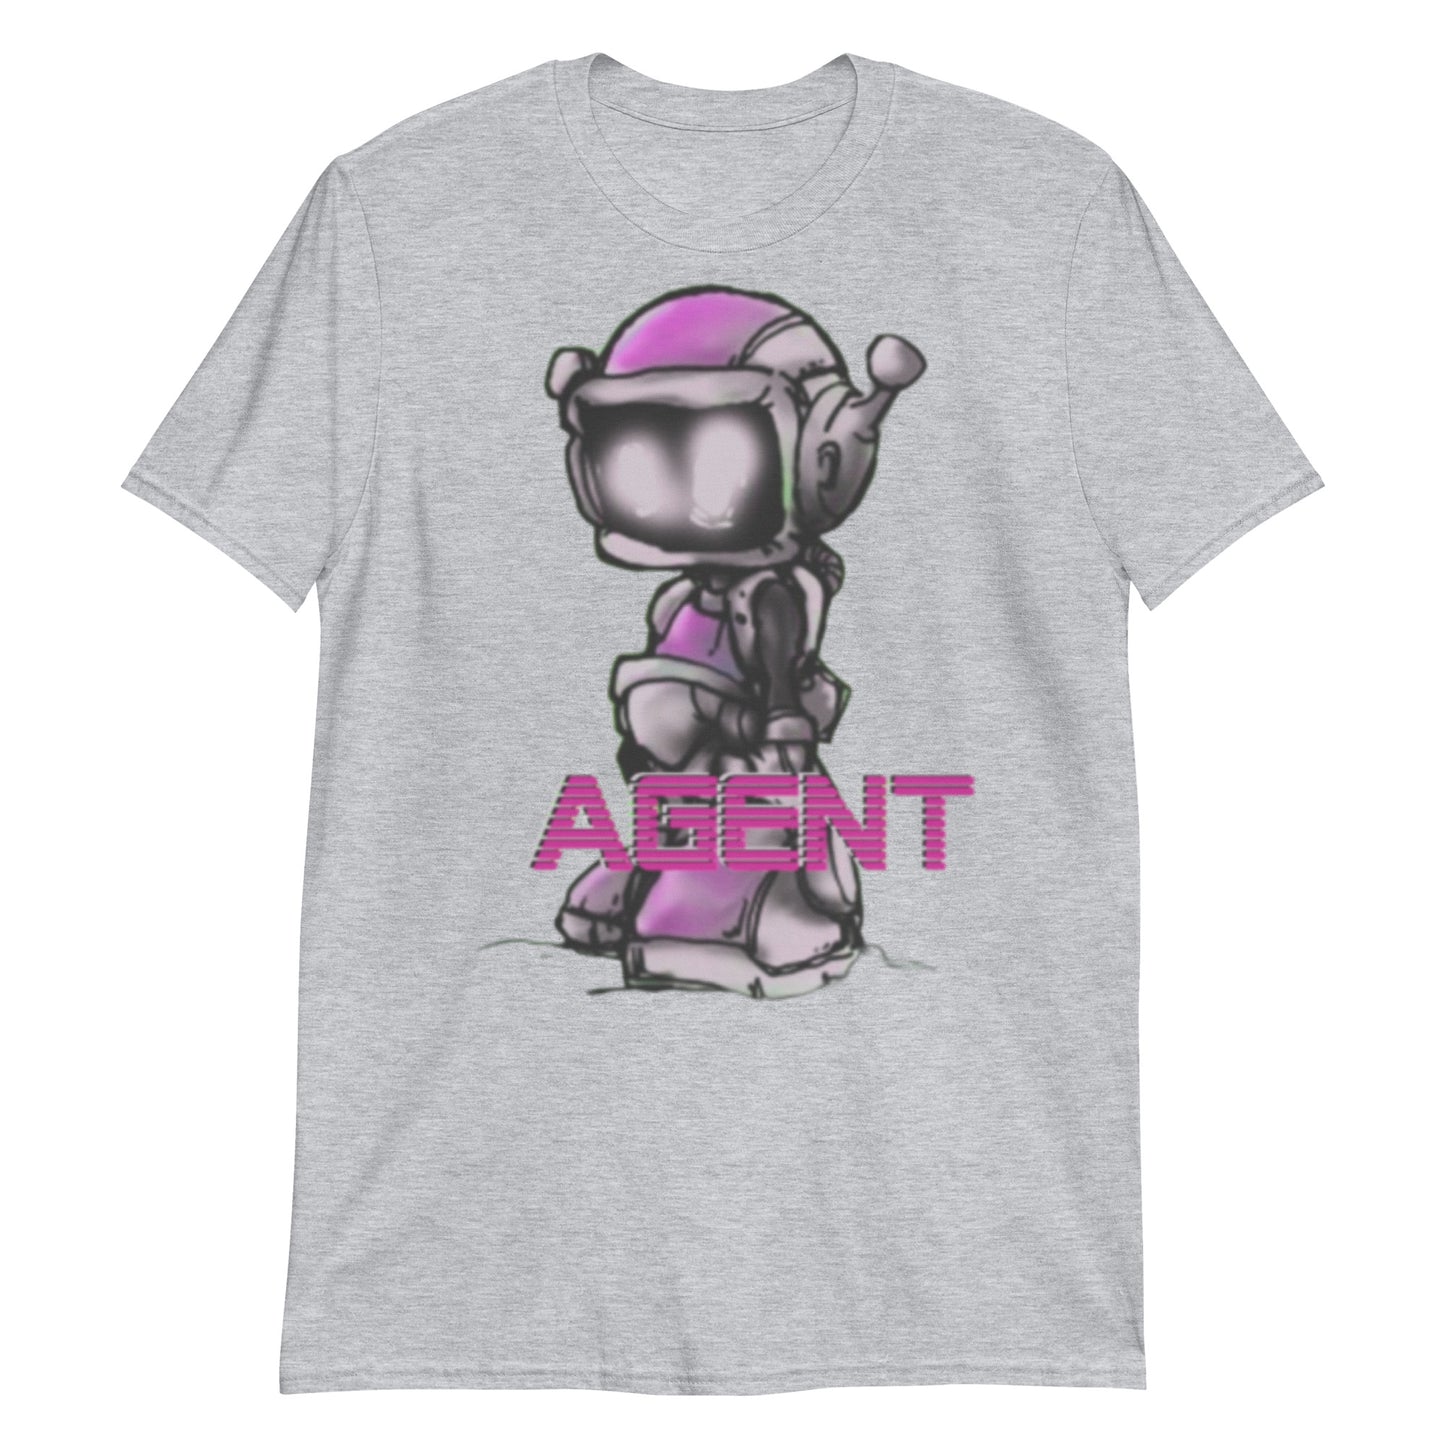 Agent Pink Robot T-Shirt -Discount Tee